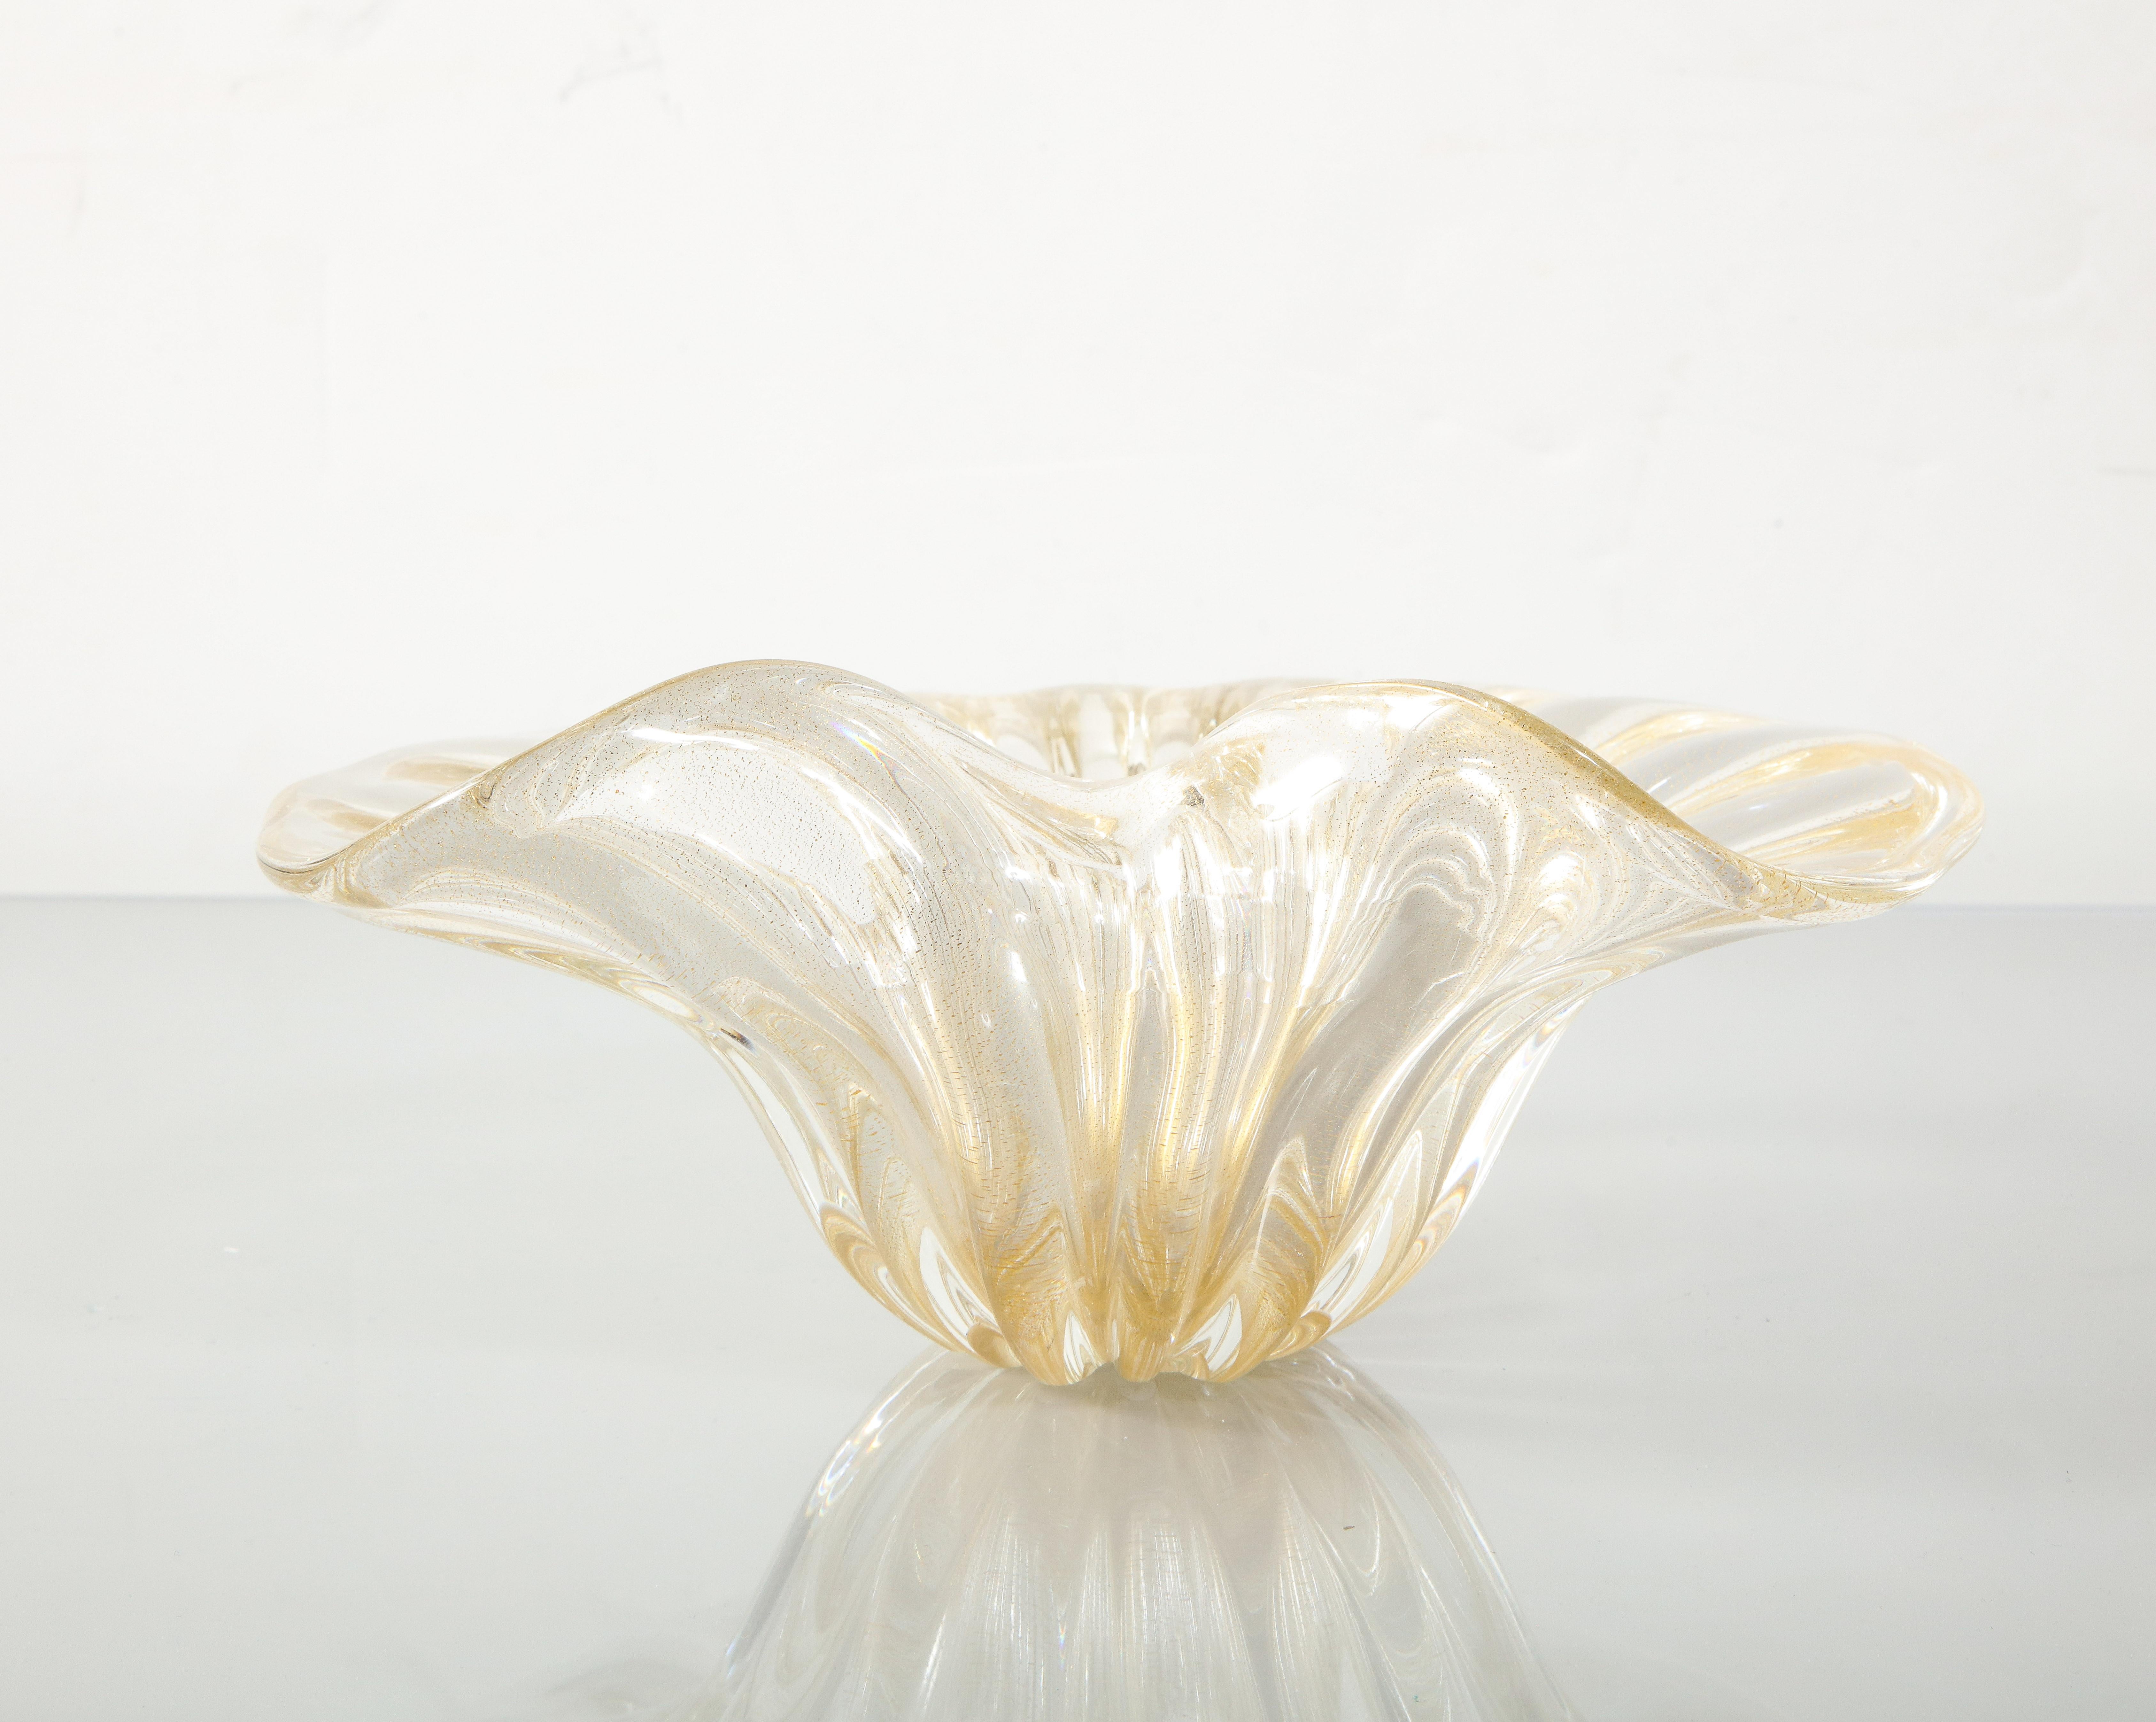 Italian Alberto Dona Murano Aventurina Glass Dish 1970's #2